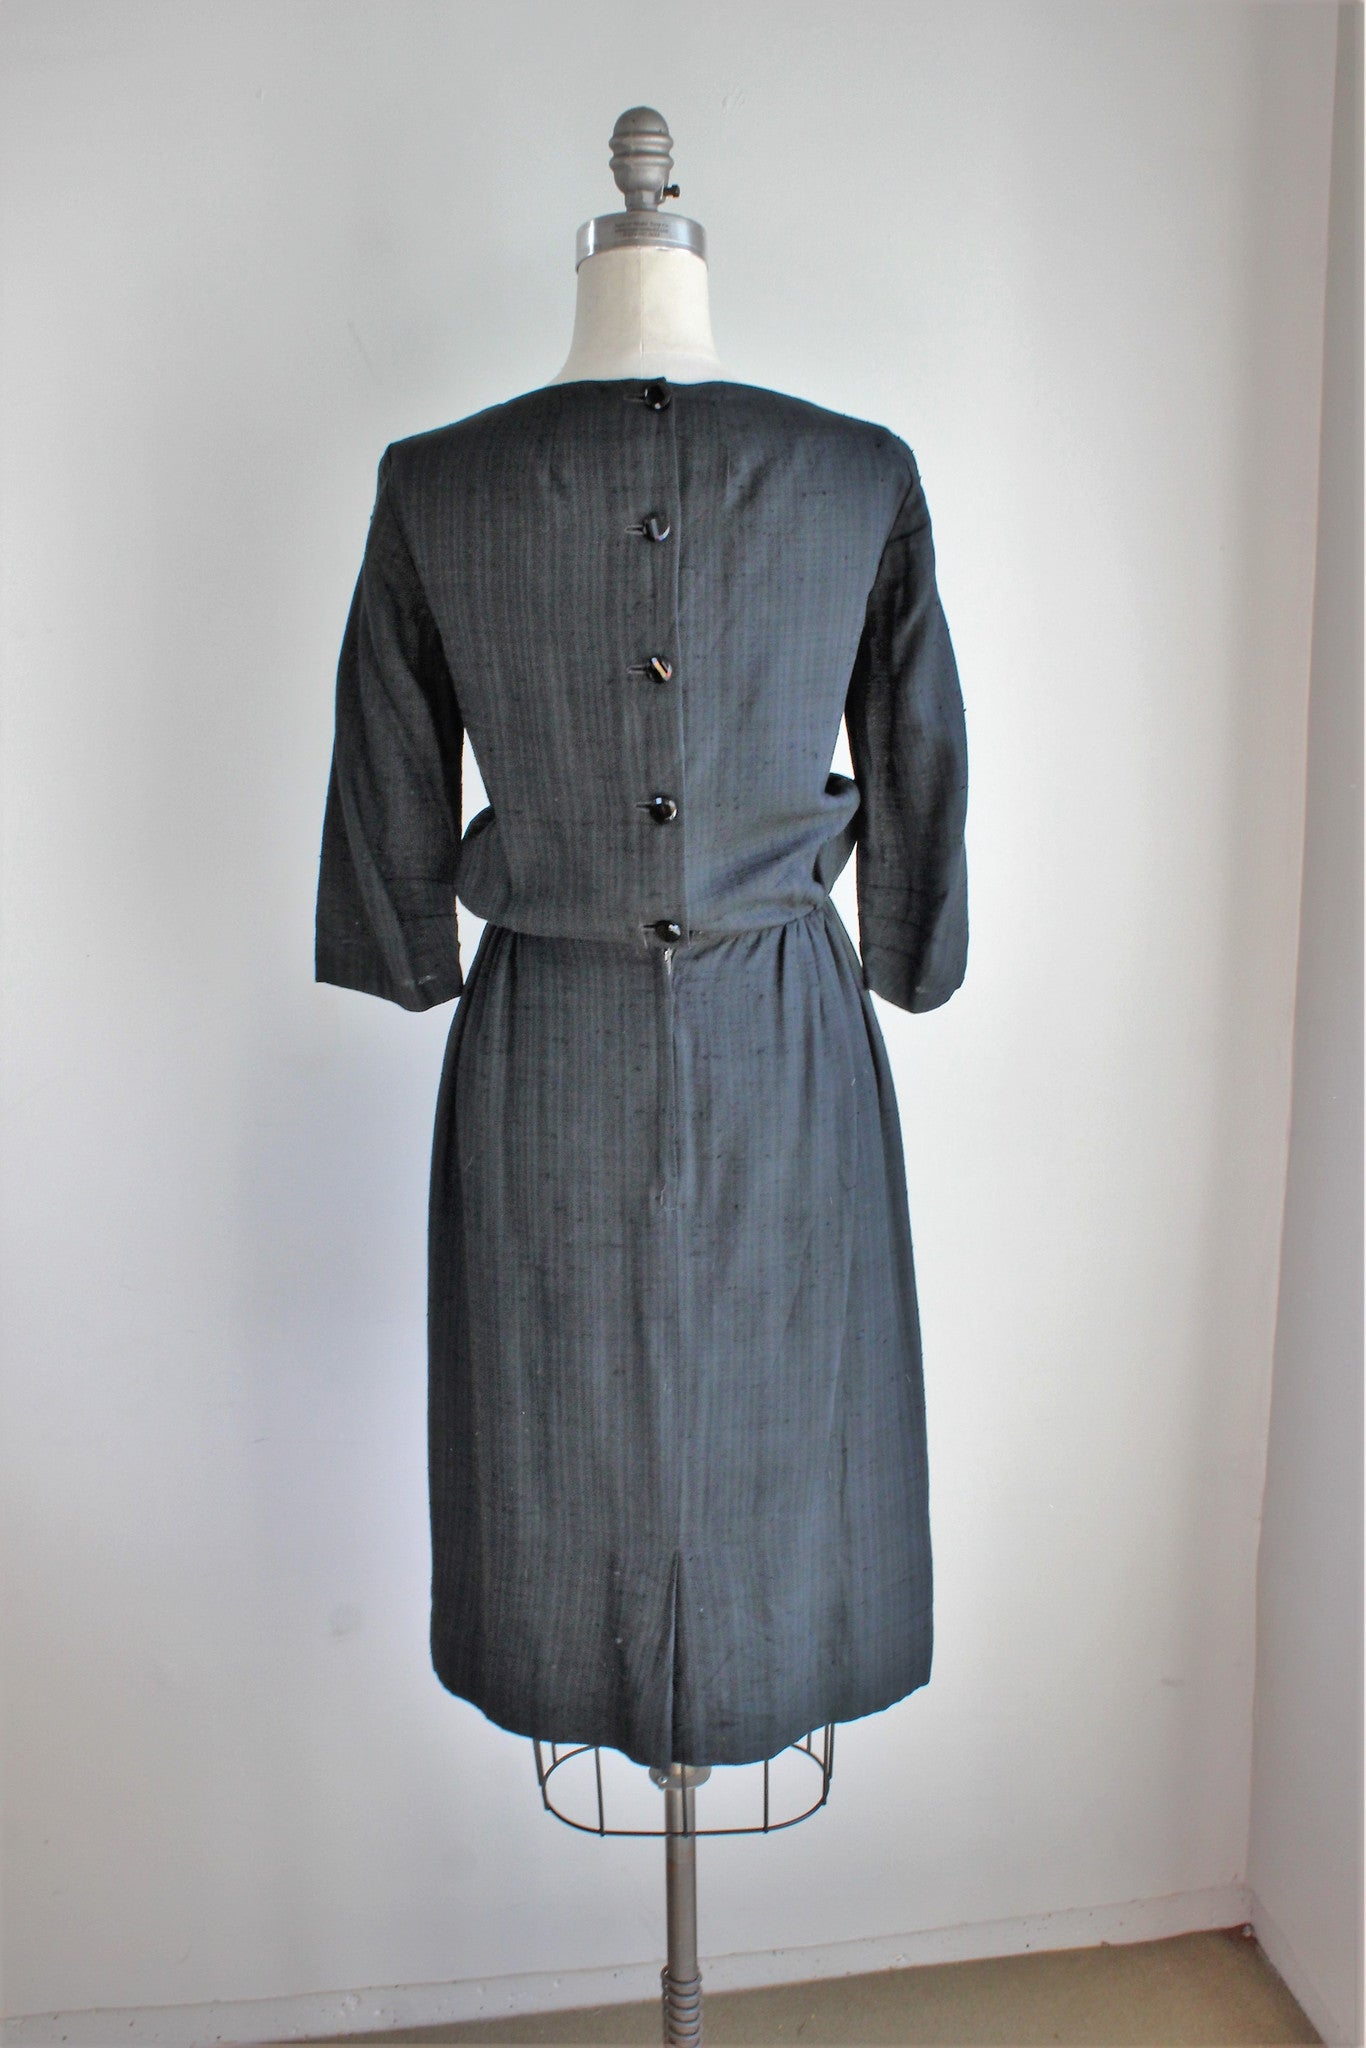 Vintage 1950s Wiggle Dress, Black Button Back - Toadstool Farm Vintage